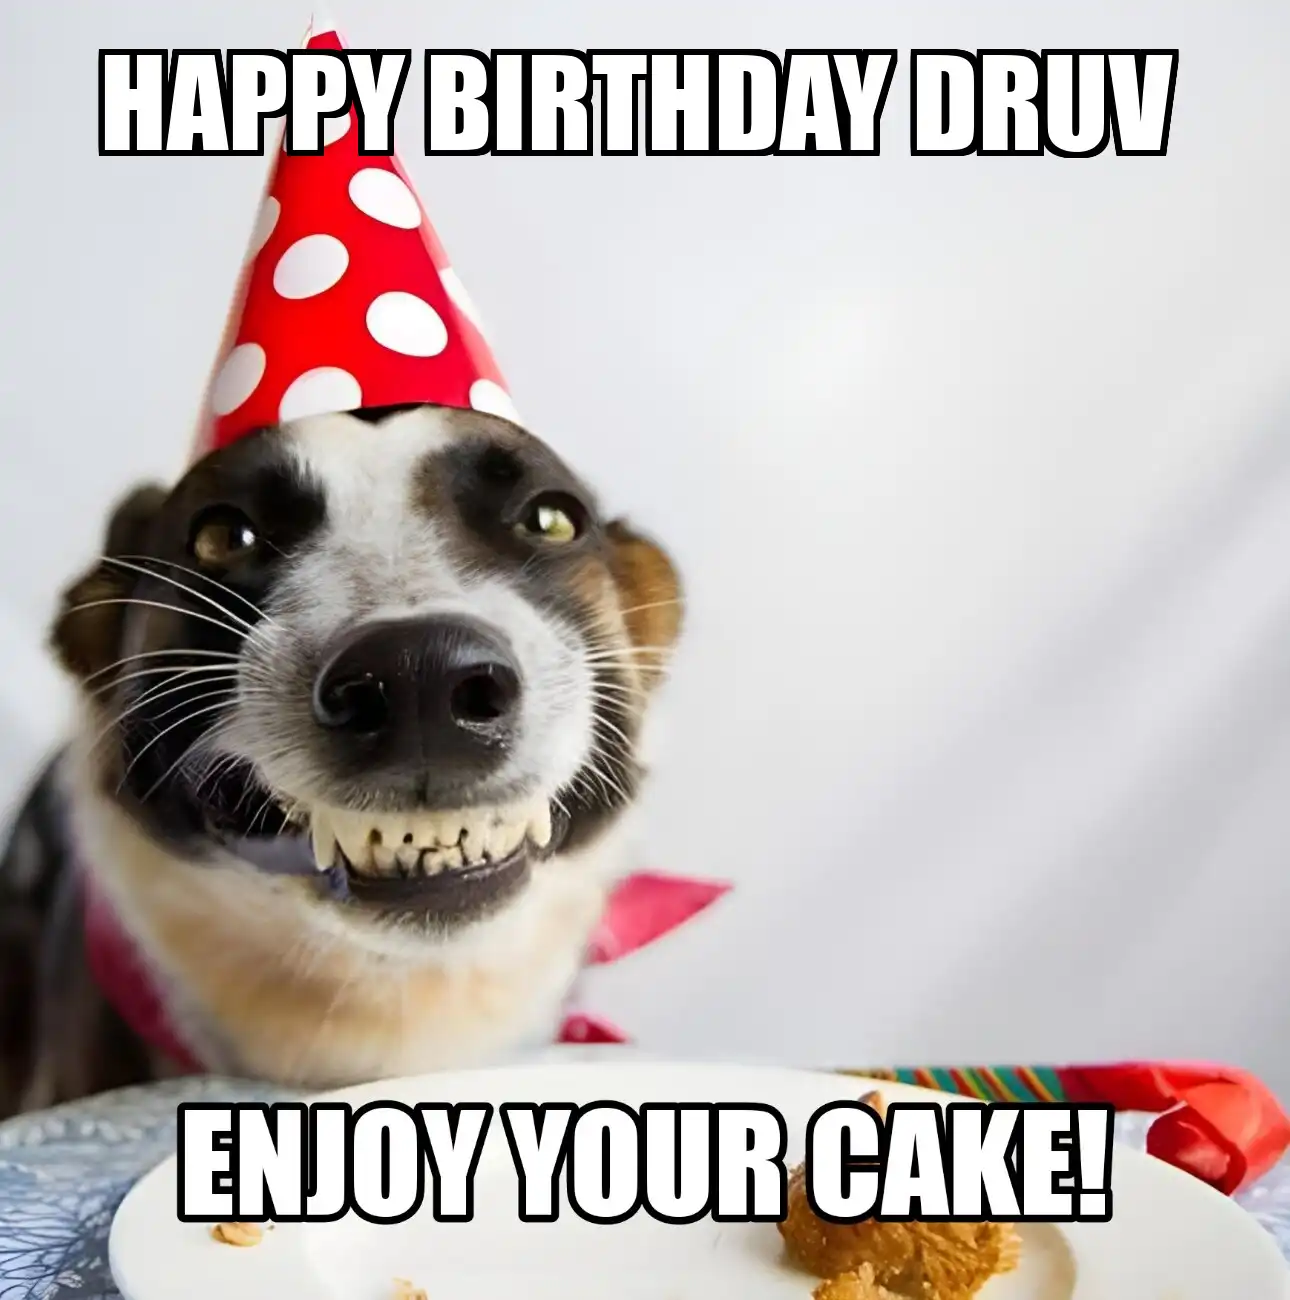 Happy Birthday Druv Enjoy Your Cake Dog Meme